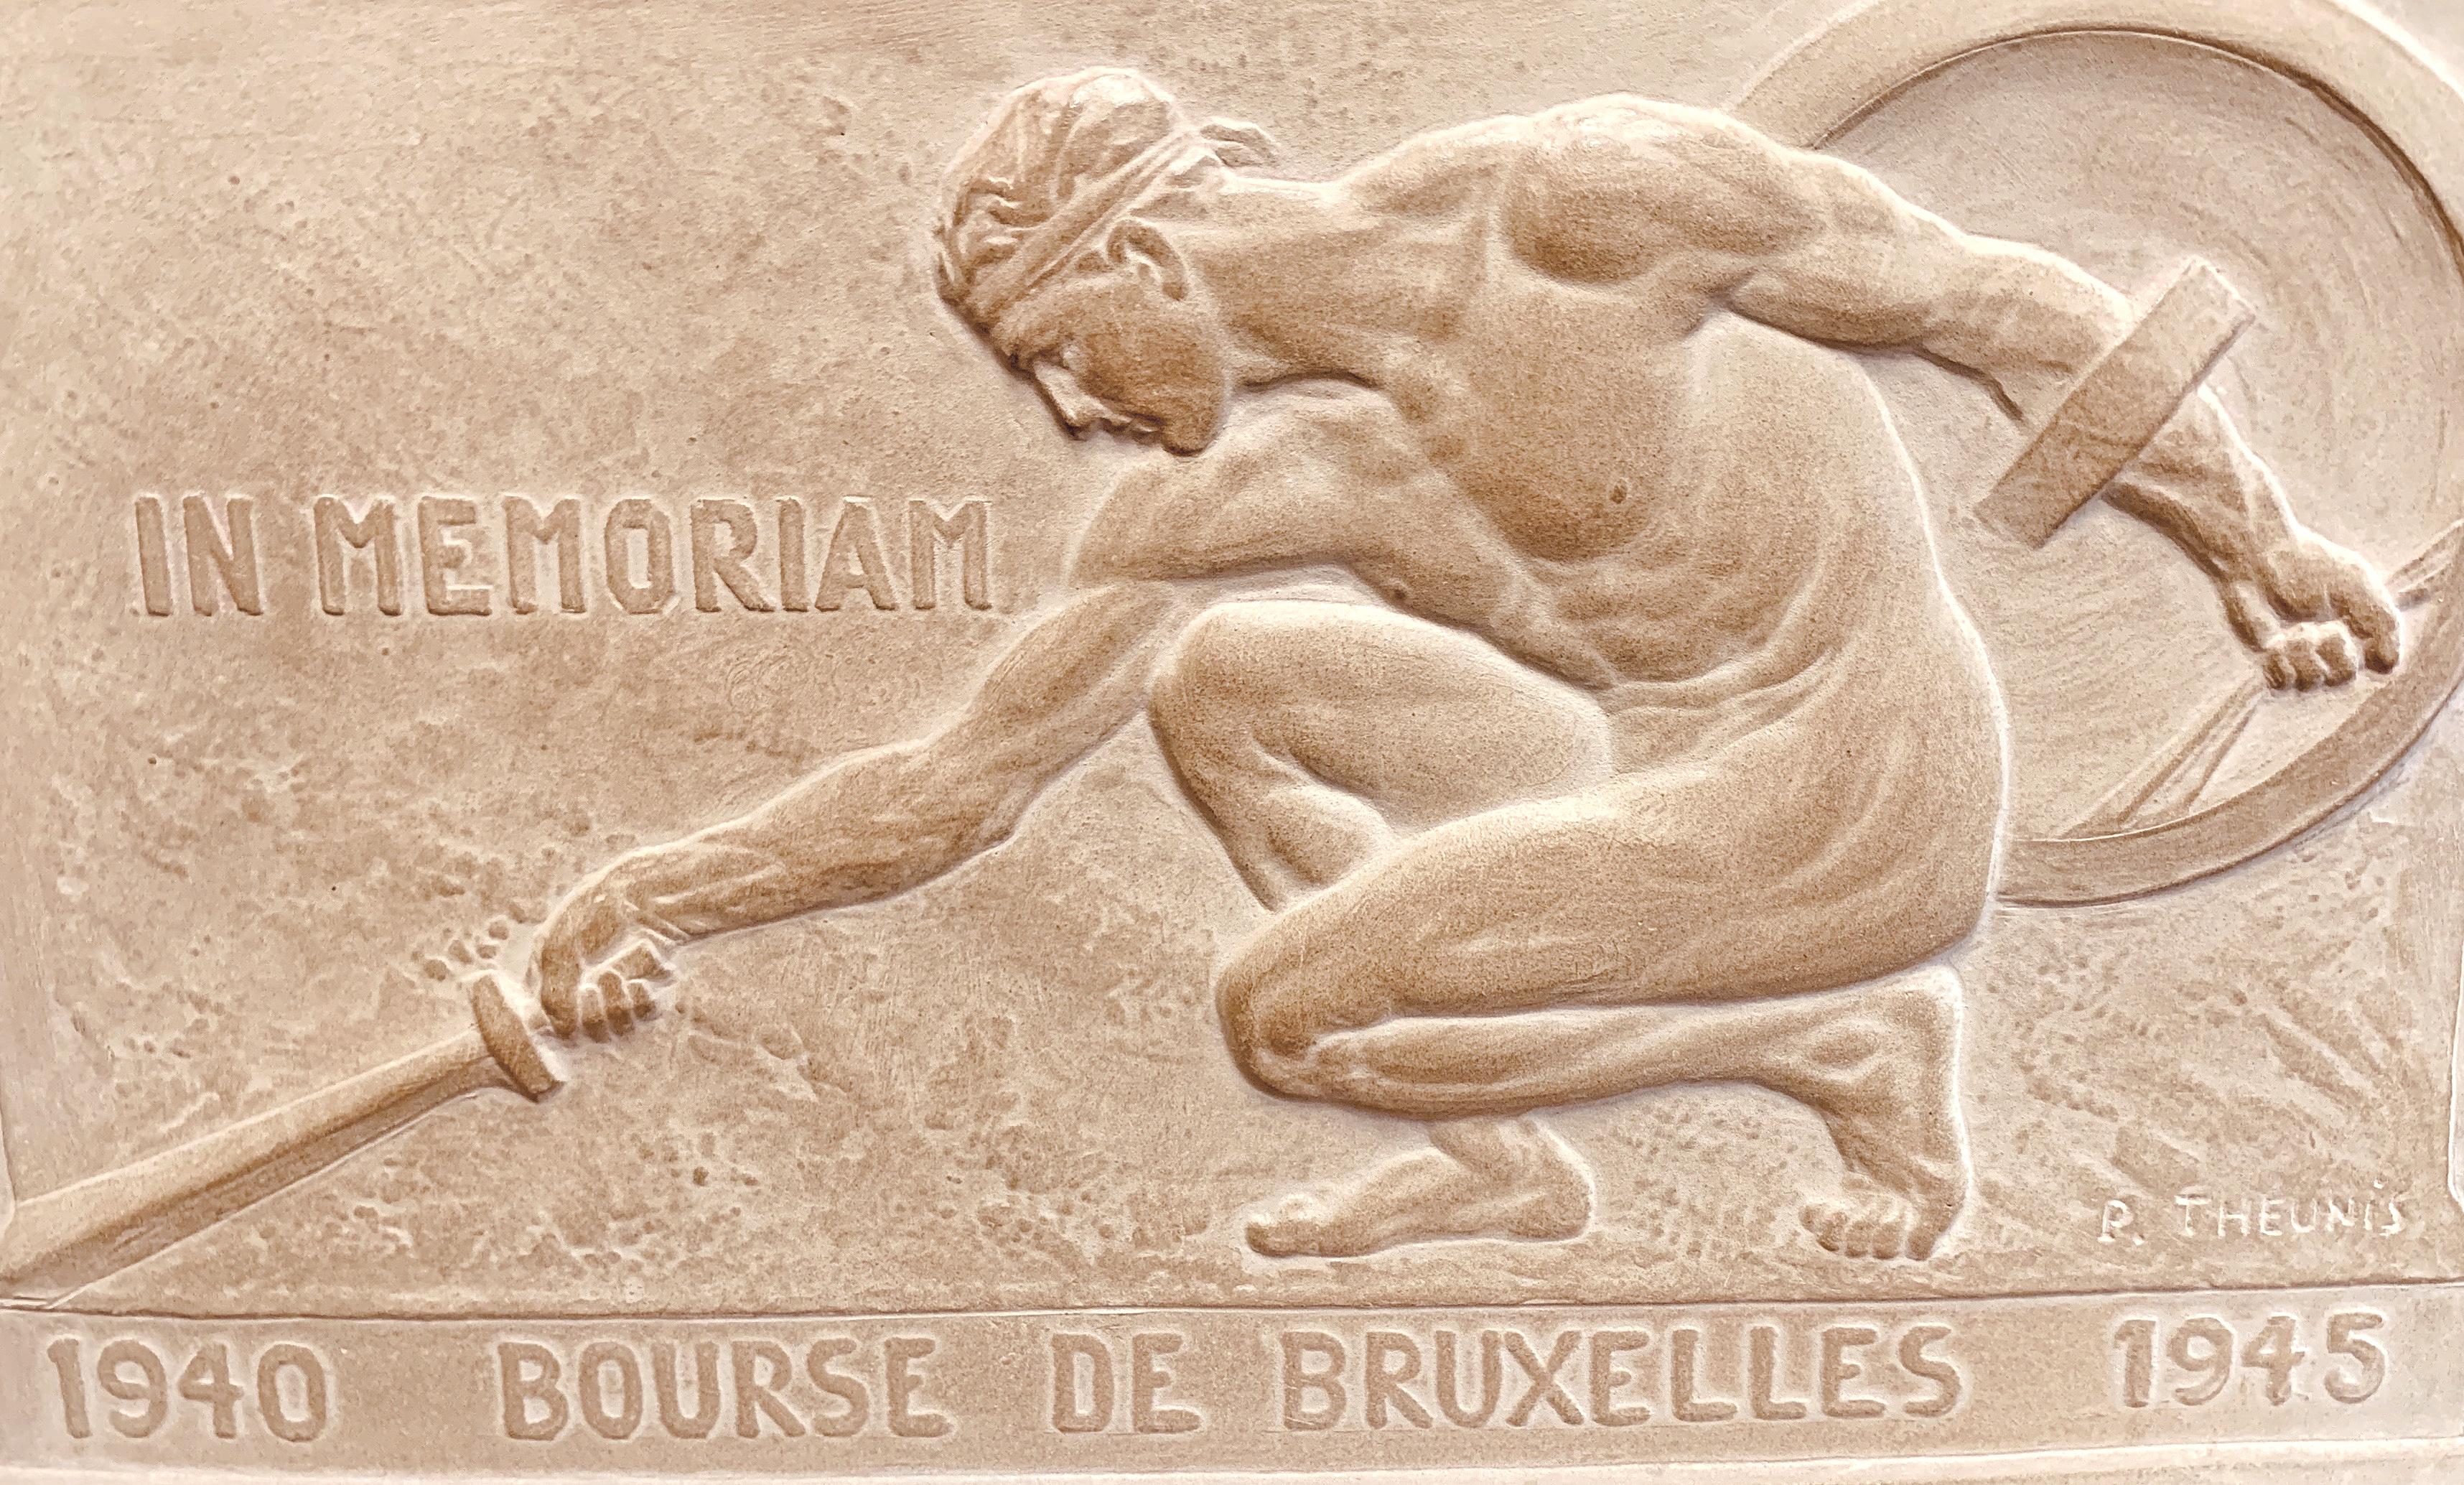 Puissante et émouvante, cette représentation d'un gladiateur masculin nu, posant son épée au sol avec son bouclier derrière lui, est un magnifique mémorial célébrant la fin de la Seconde Guerre mondiale, en 1947. Le sculpteur belge, Pierre Theunis,